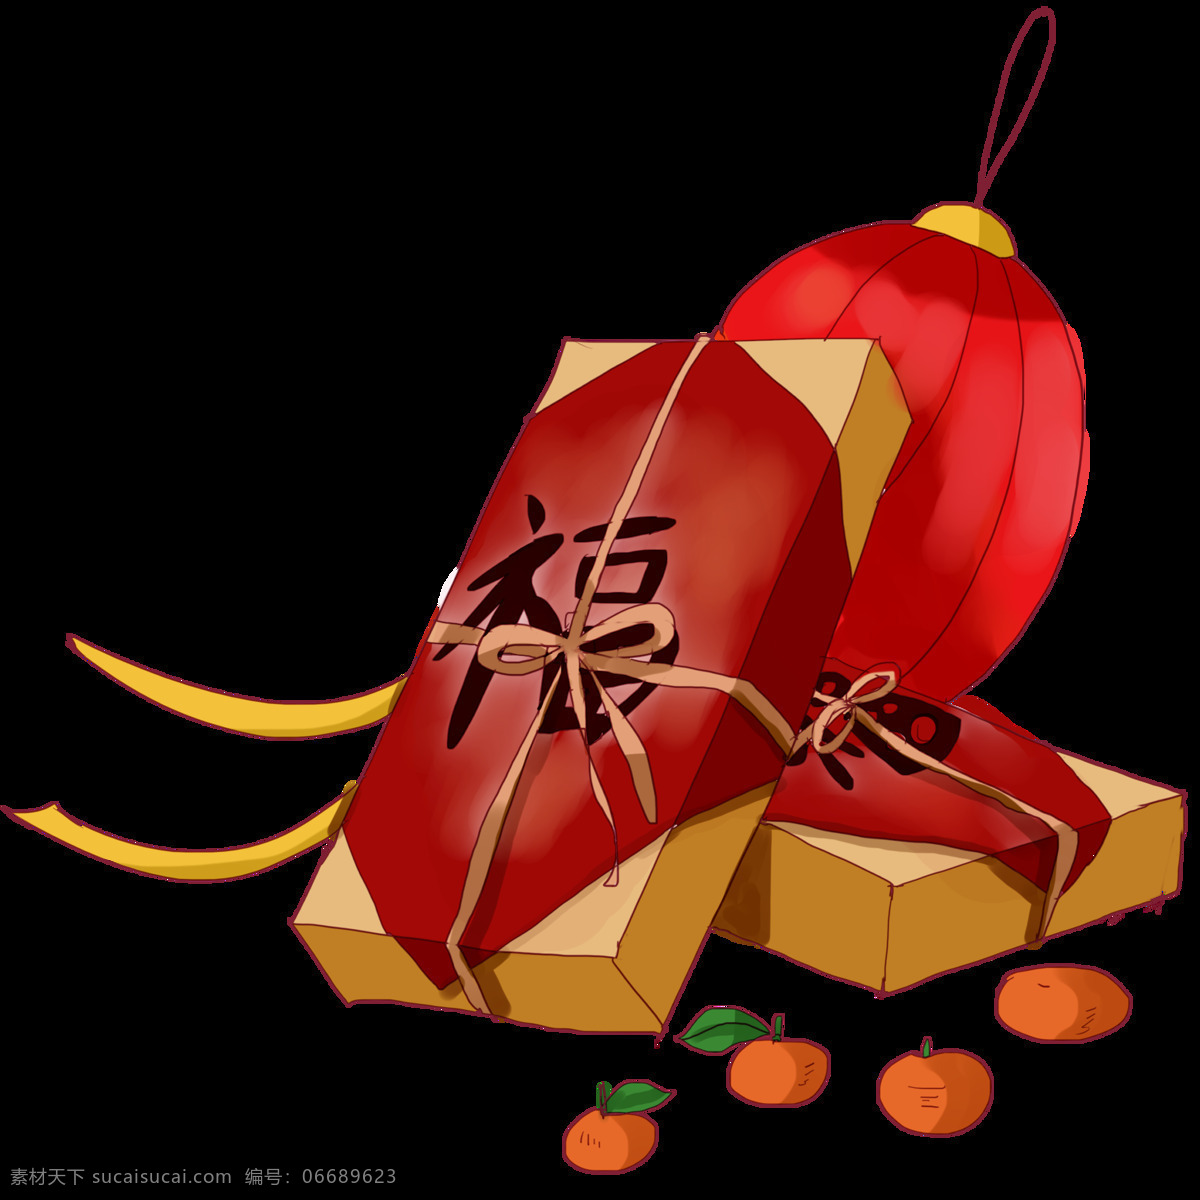 年货 礼盒 手绘 插画 红色的灯笼 绿色的叶子 新鲜的水果 黄色的蝴蝶结 红色的福字 红色的橘子 黄色的绳子